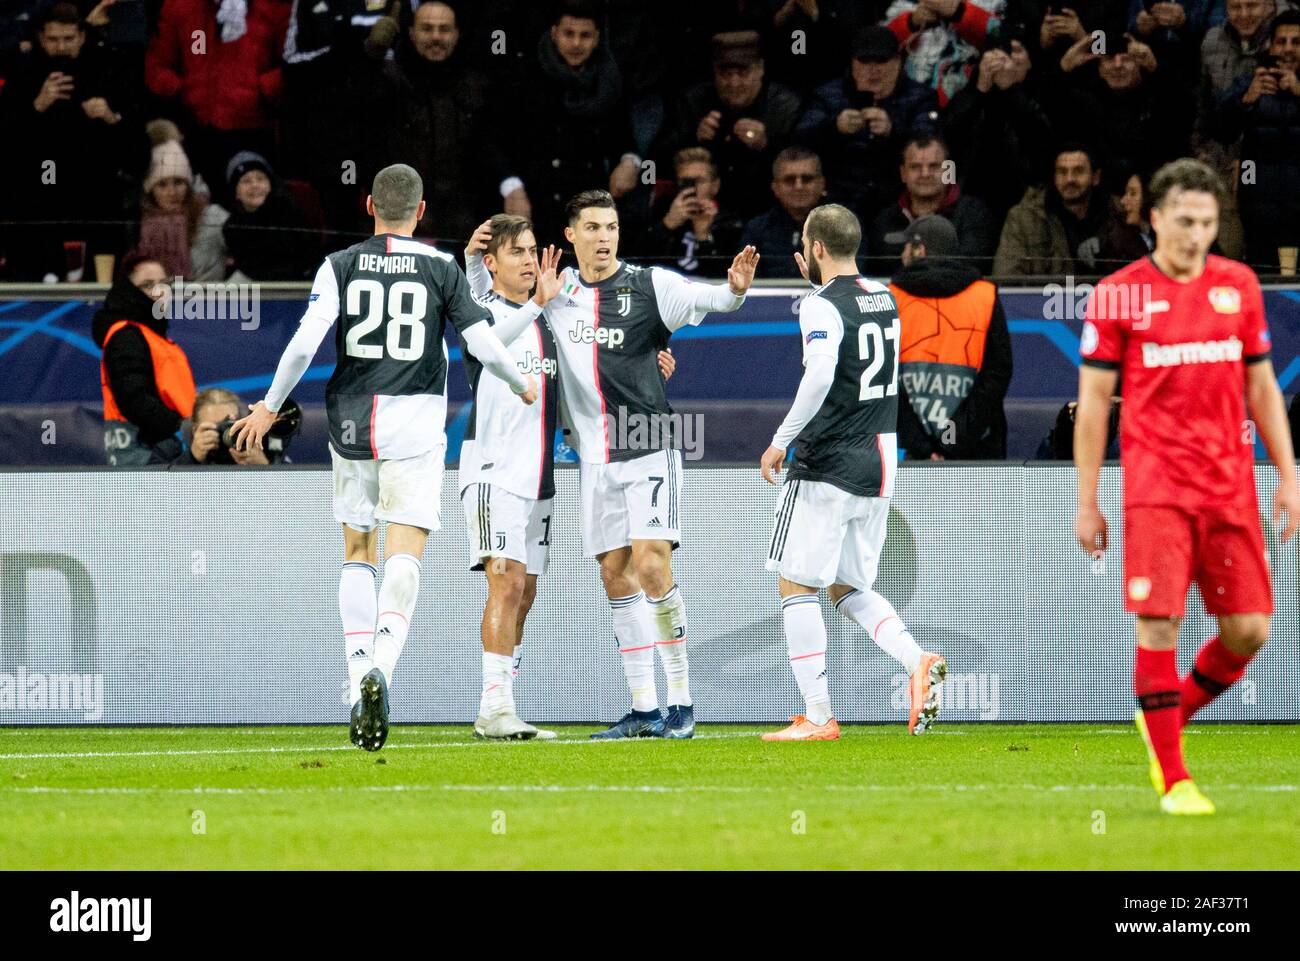 Jubilation Cristiano Ronaldo (Juve) a marqué son but 0 : 1, de gauche à droite Merih DEMIRAL (Juve), Paulo DYBALA (Juve), Cristiano Ronaldo (Juve), Gonzalo HIGUAIN (Juve), r. Julian BAUMGARTLINGER (LEV) déçu de la Ligue des Champions de football, premier tour, 6e journée du groupe D, Bayer 04 Leverkusen (LEV) - Juventus (Juve), 12/11/2019 à Leverkusen/Allemagne. Dans le monde d'utilisation | Banque D'Images